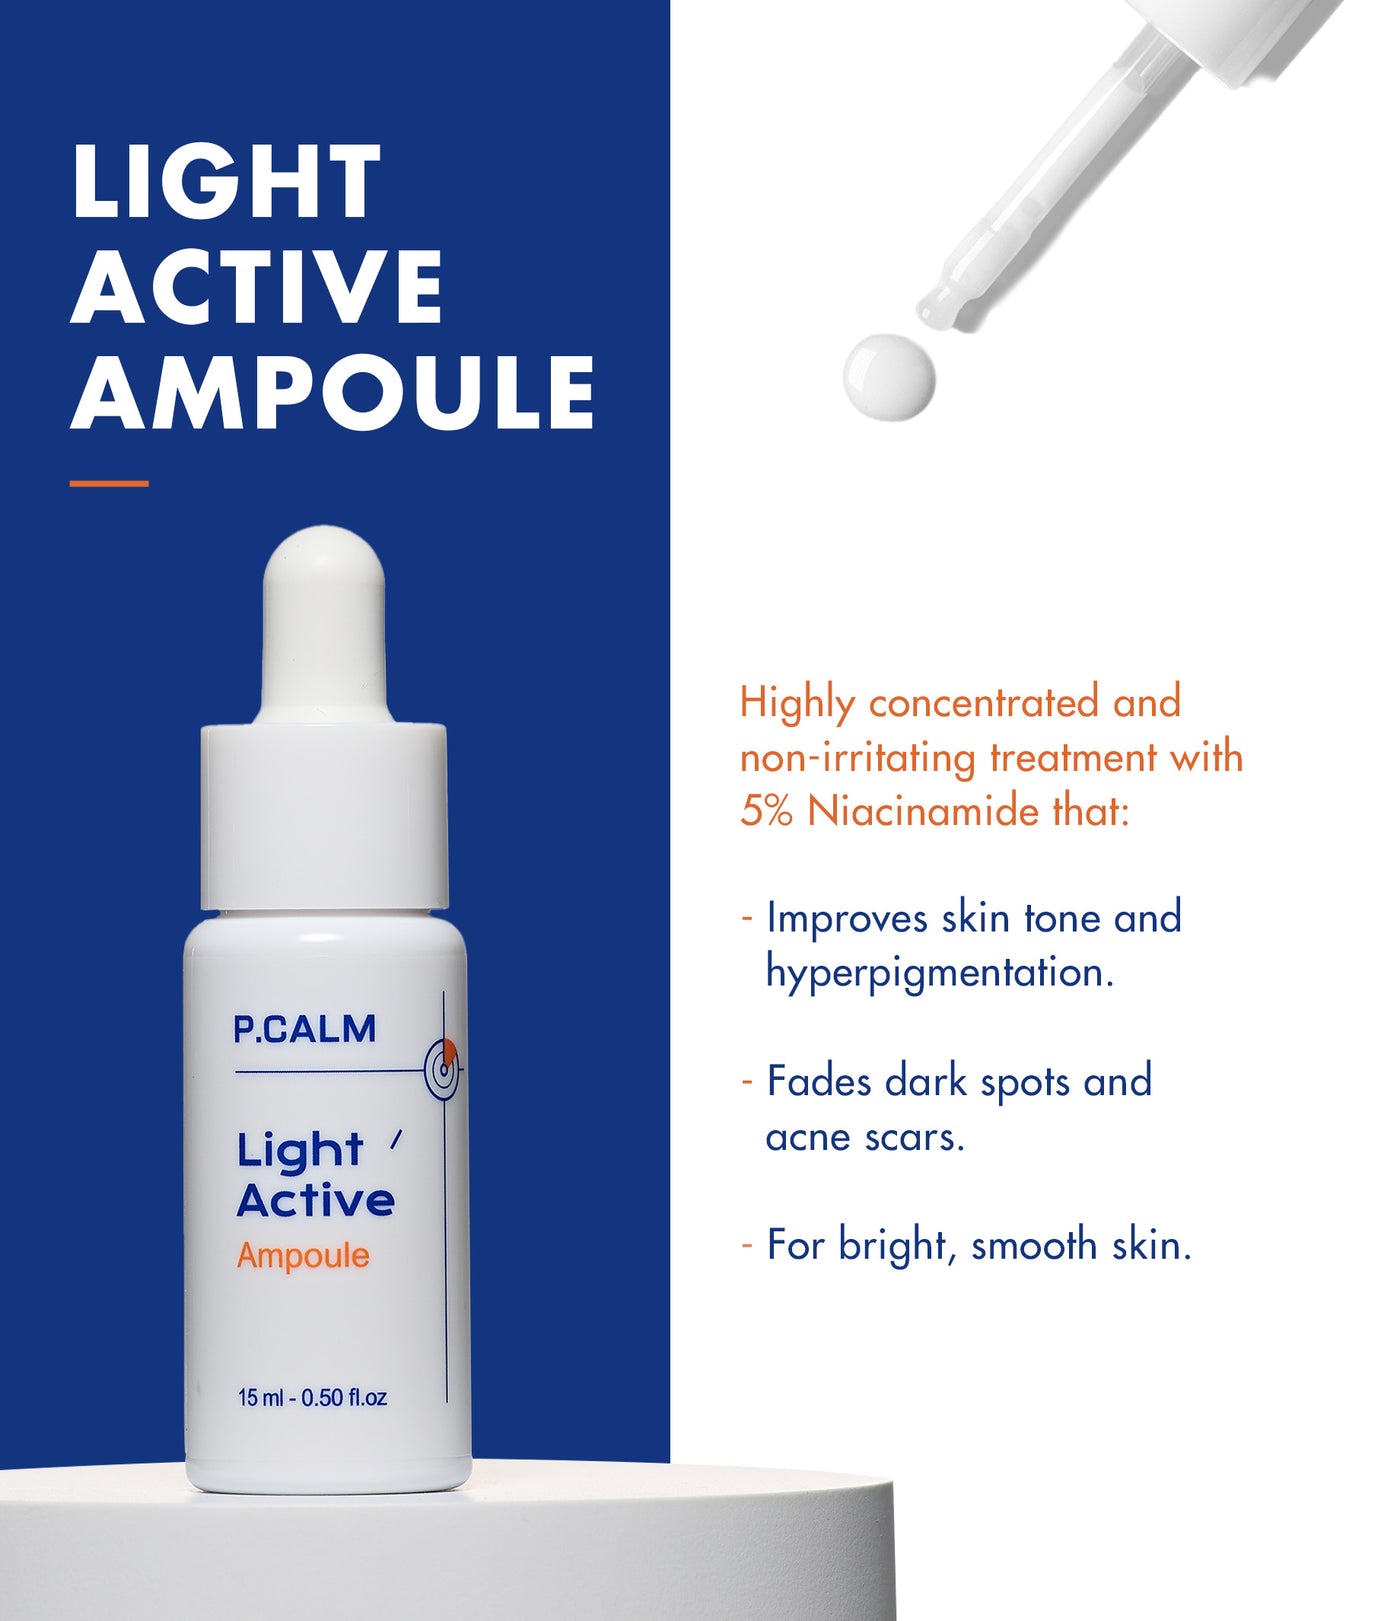 P.Calm Light' Active Ampoule